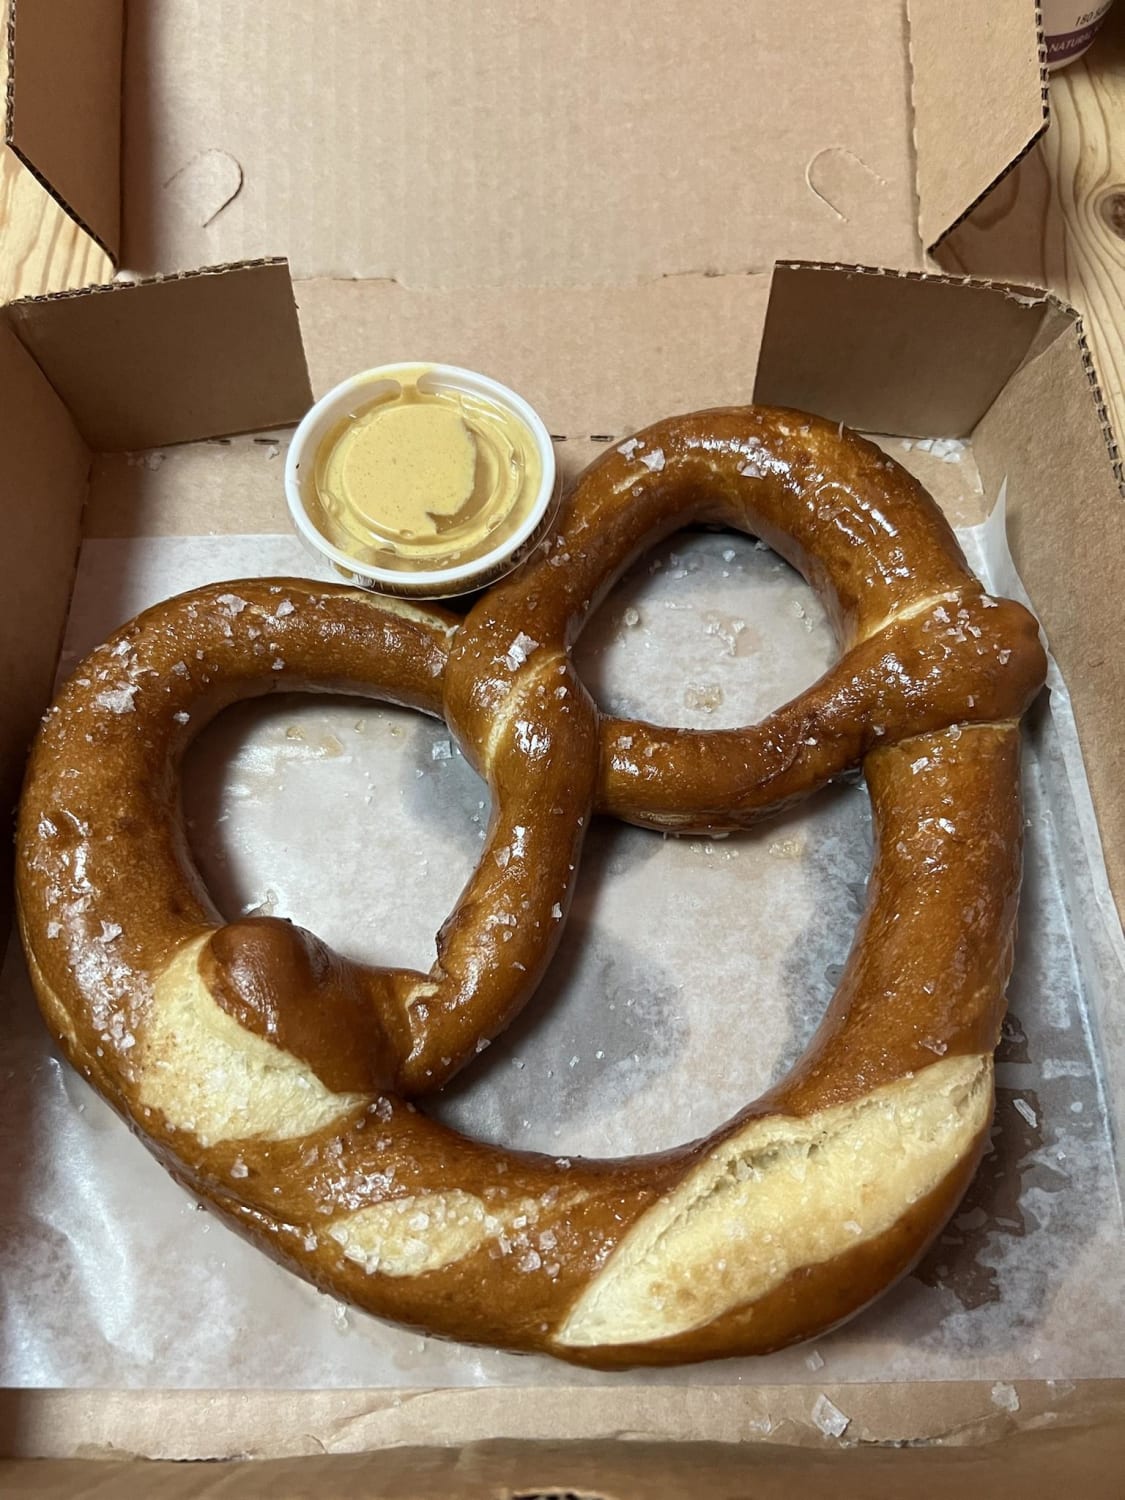 [I Ate] Big ass pretzel with dijon